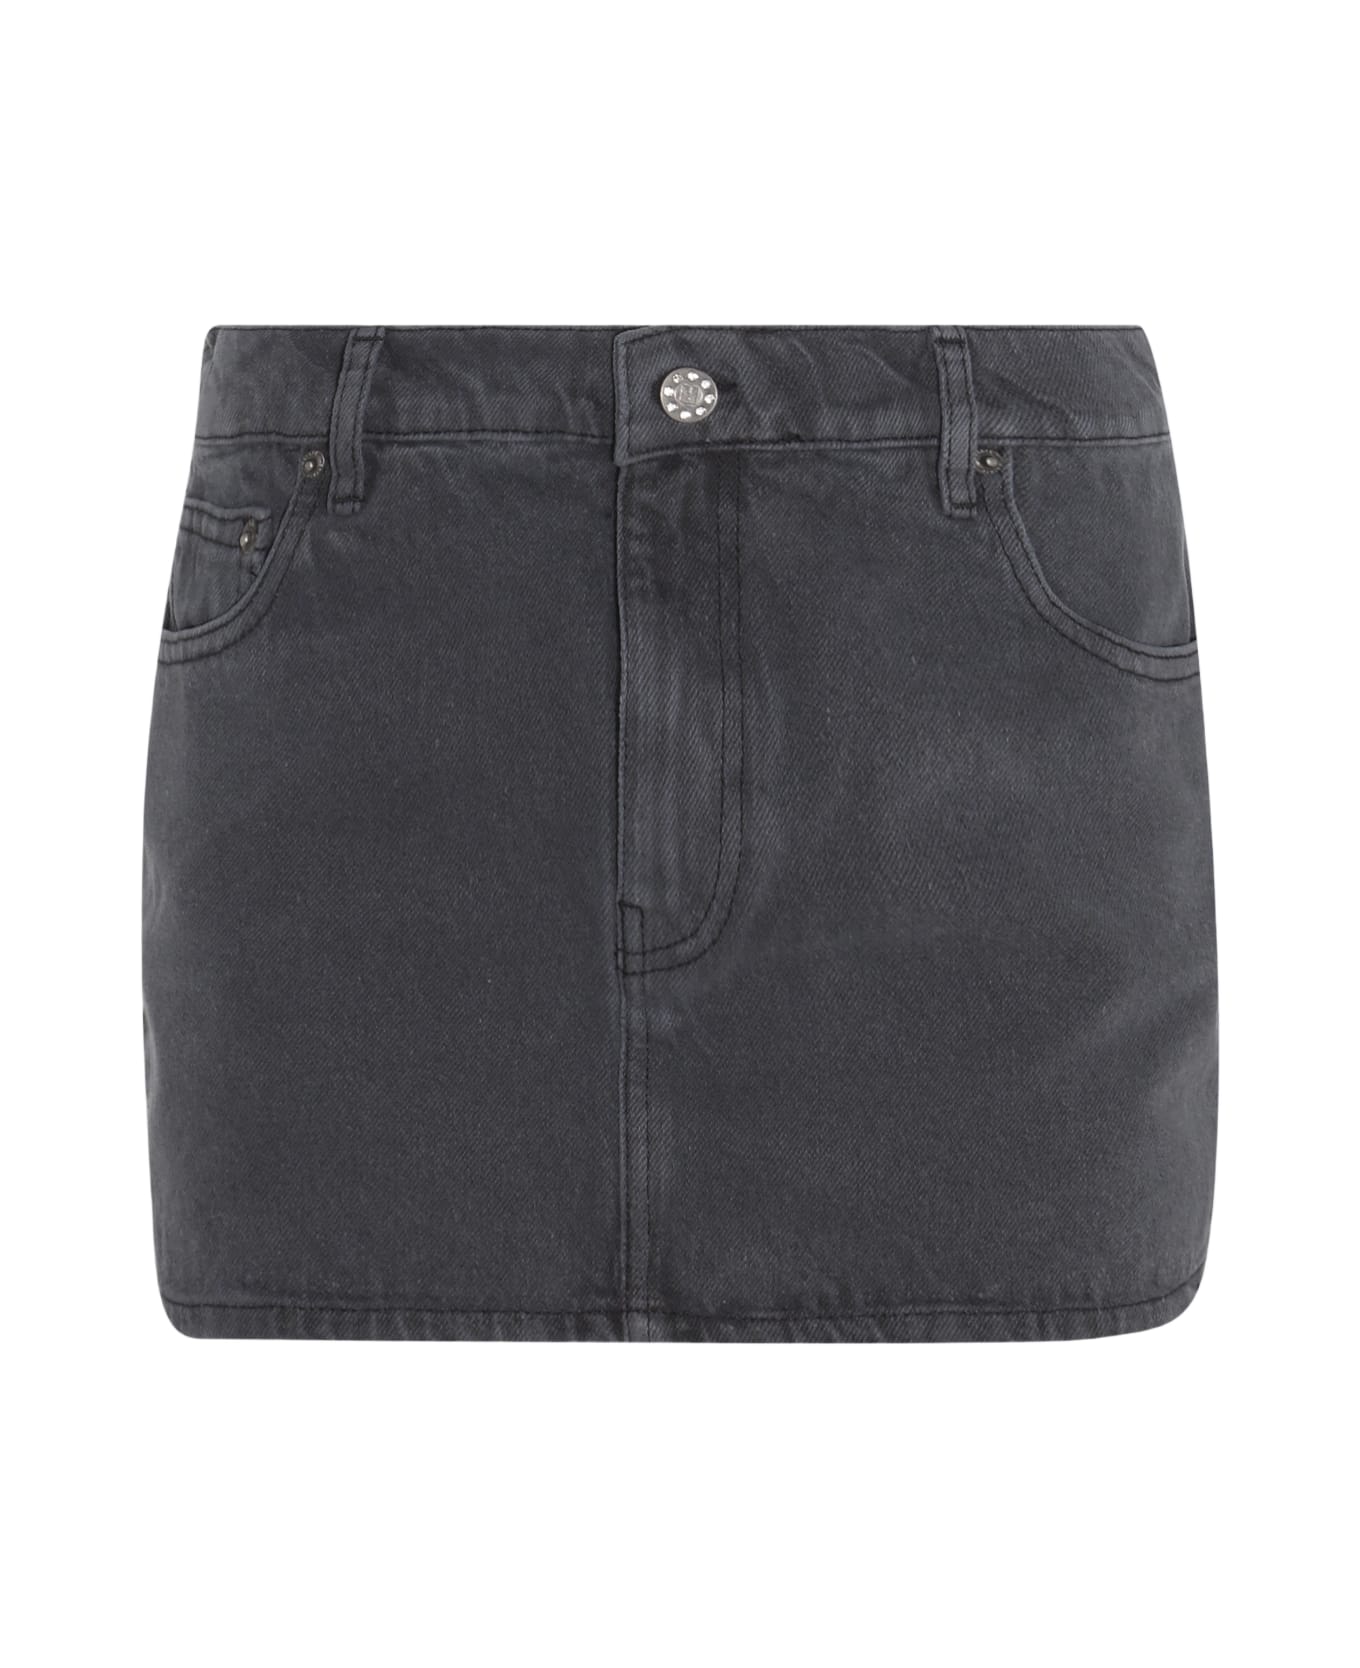 Rotate by Birger Christensen Dark Grey Cotton Denim Skirt - QUIET